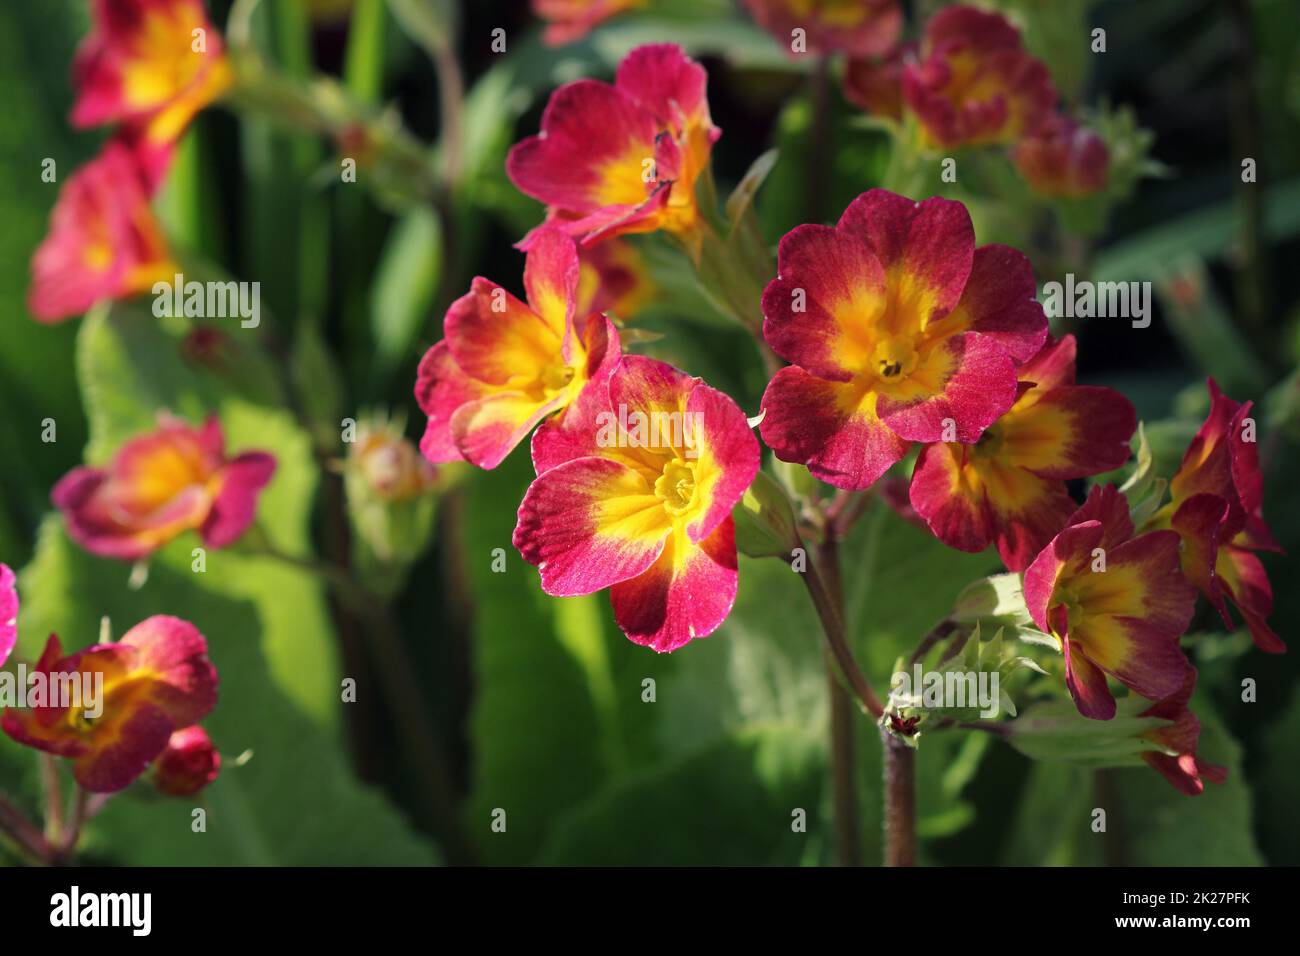 Mehrjährige Primel oder Primeln im Frühlingsgarten. Frühling Primeln Blumen, Primula Polyanthus. Die schönen roten Farben Primel Blumen Garten Stockfoto